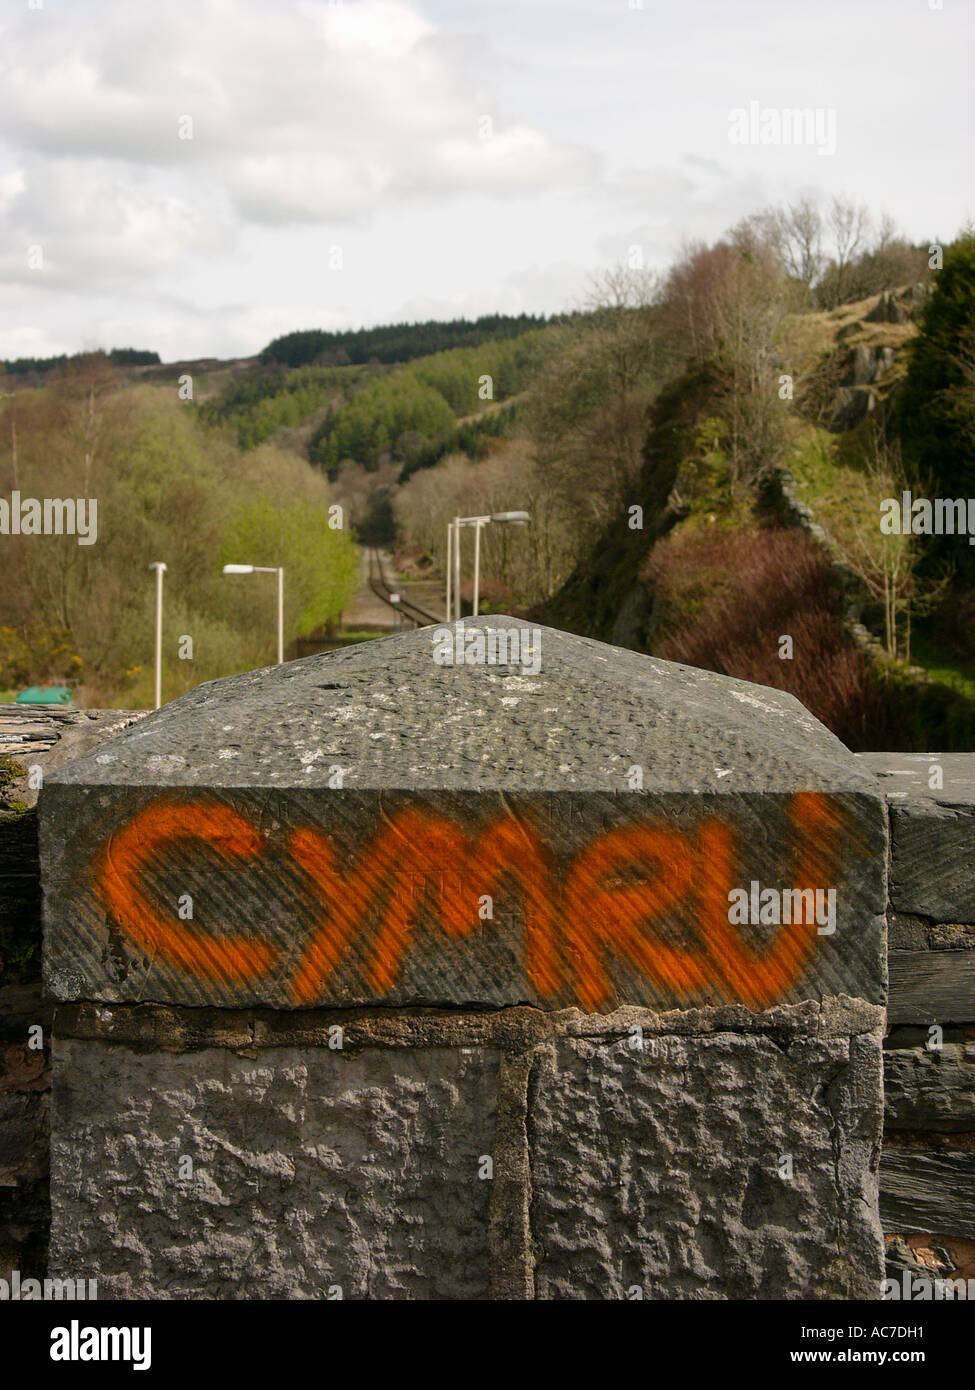 Cymru, the welsh word for Wales, graffiti  sprayed in red pint on a railway bridge in Dolwyddelan Gwynedd north wales UK Stock Photo